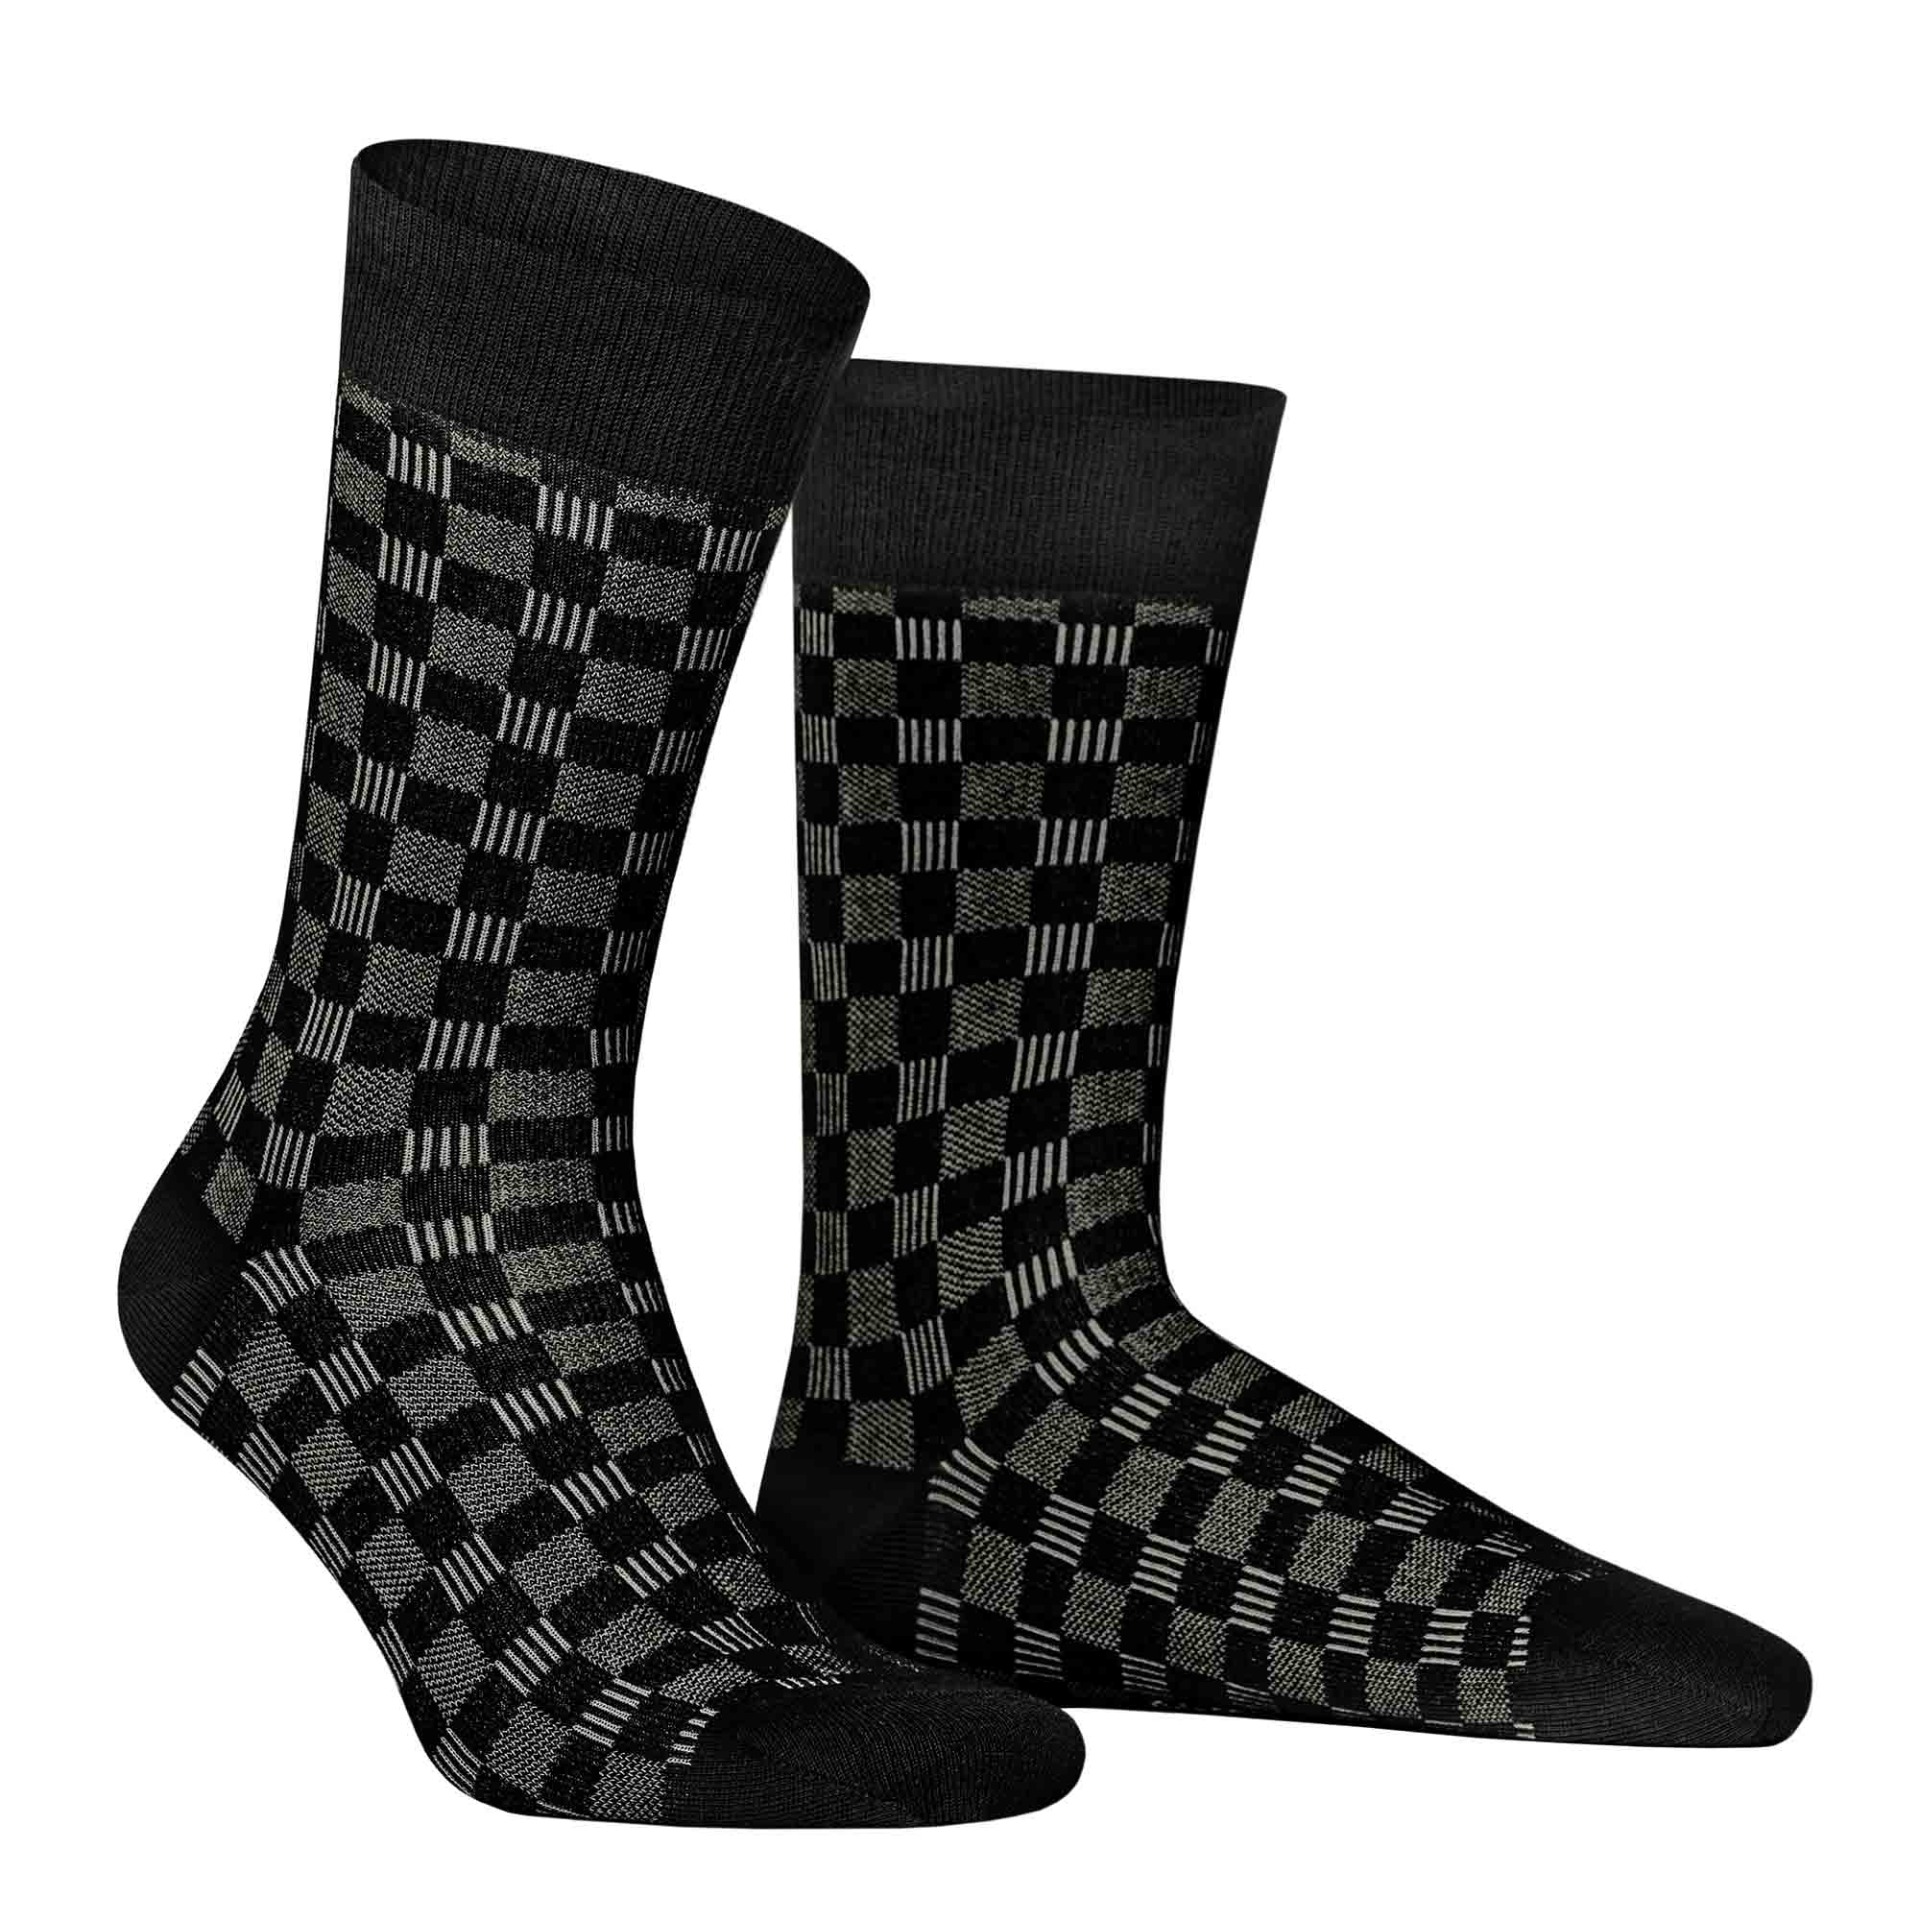 HUDSON Herren BOARD -  43/46 - Socken mit Schachbrett-Muster - Black (Schwarz)